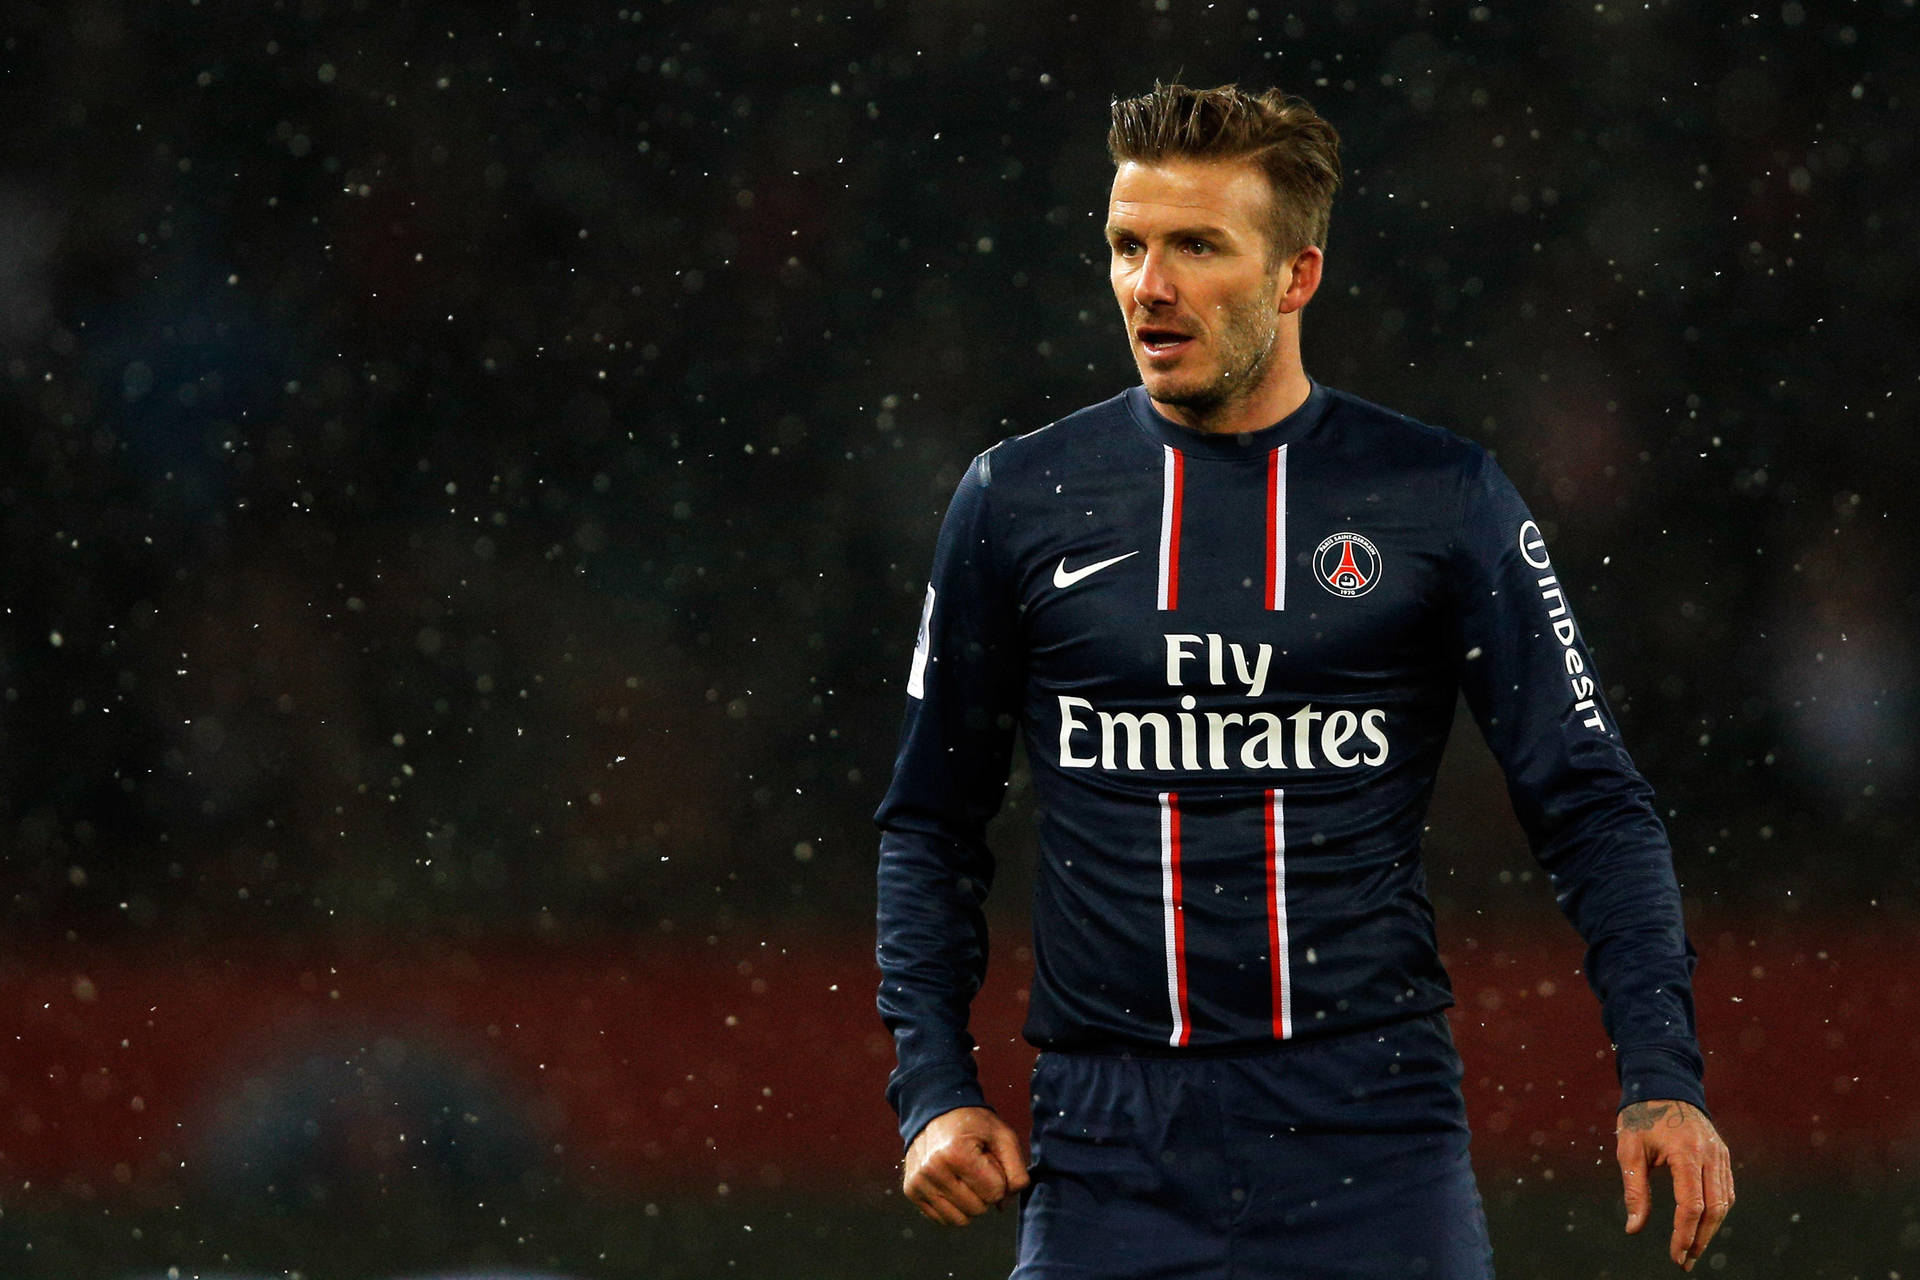 David Beckham Shoots With Fly Emirates Background